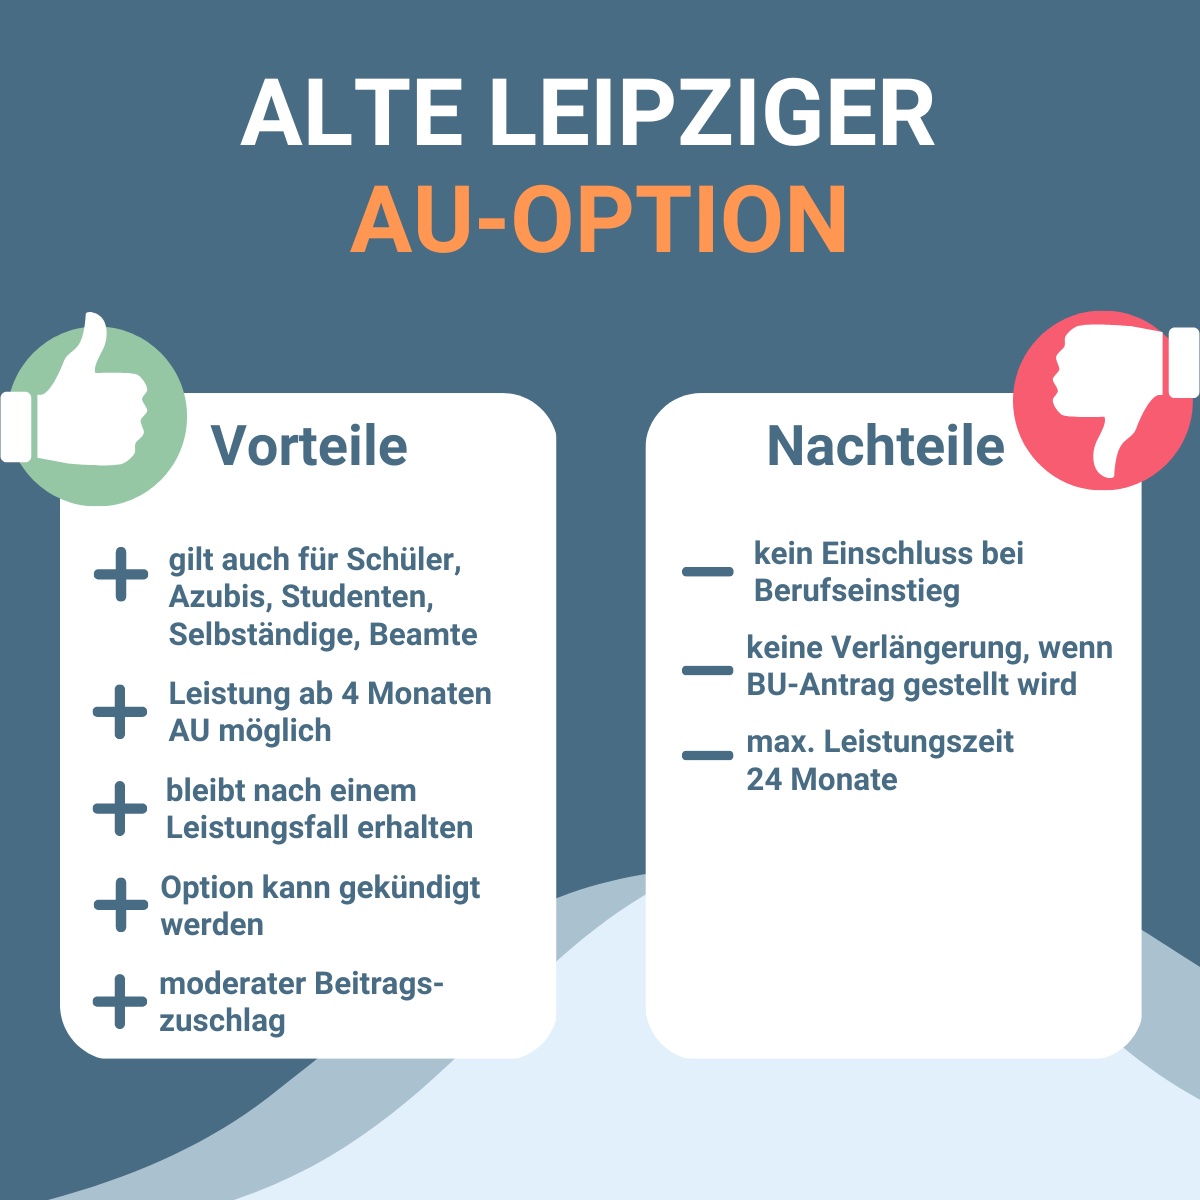 Infografik zu Vorteilen und Nachteilen der AU-Option bei der Alte Leipziger.